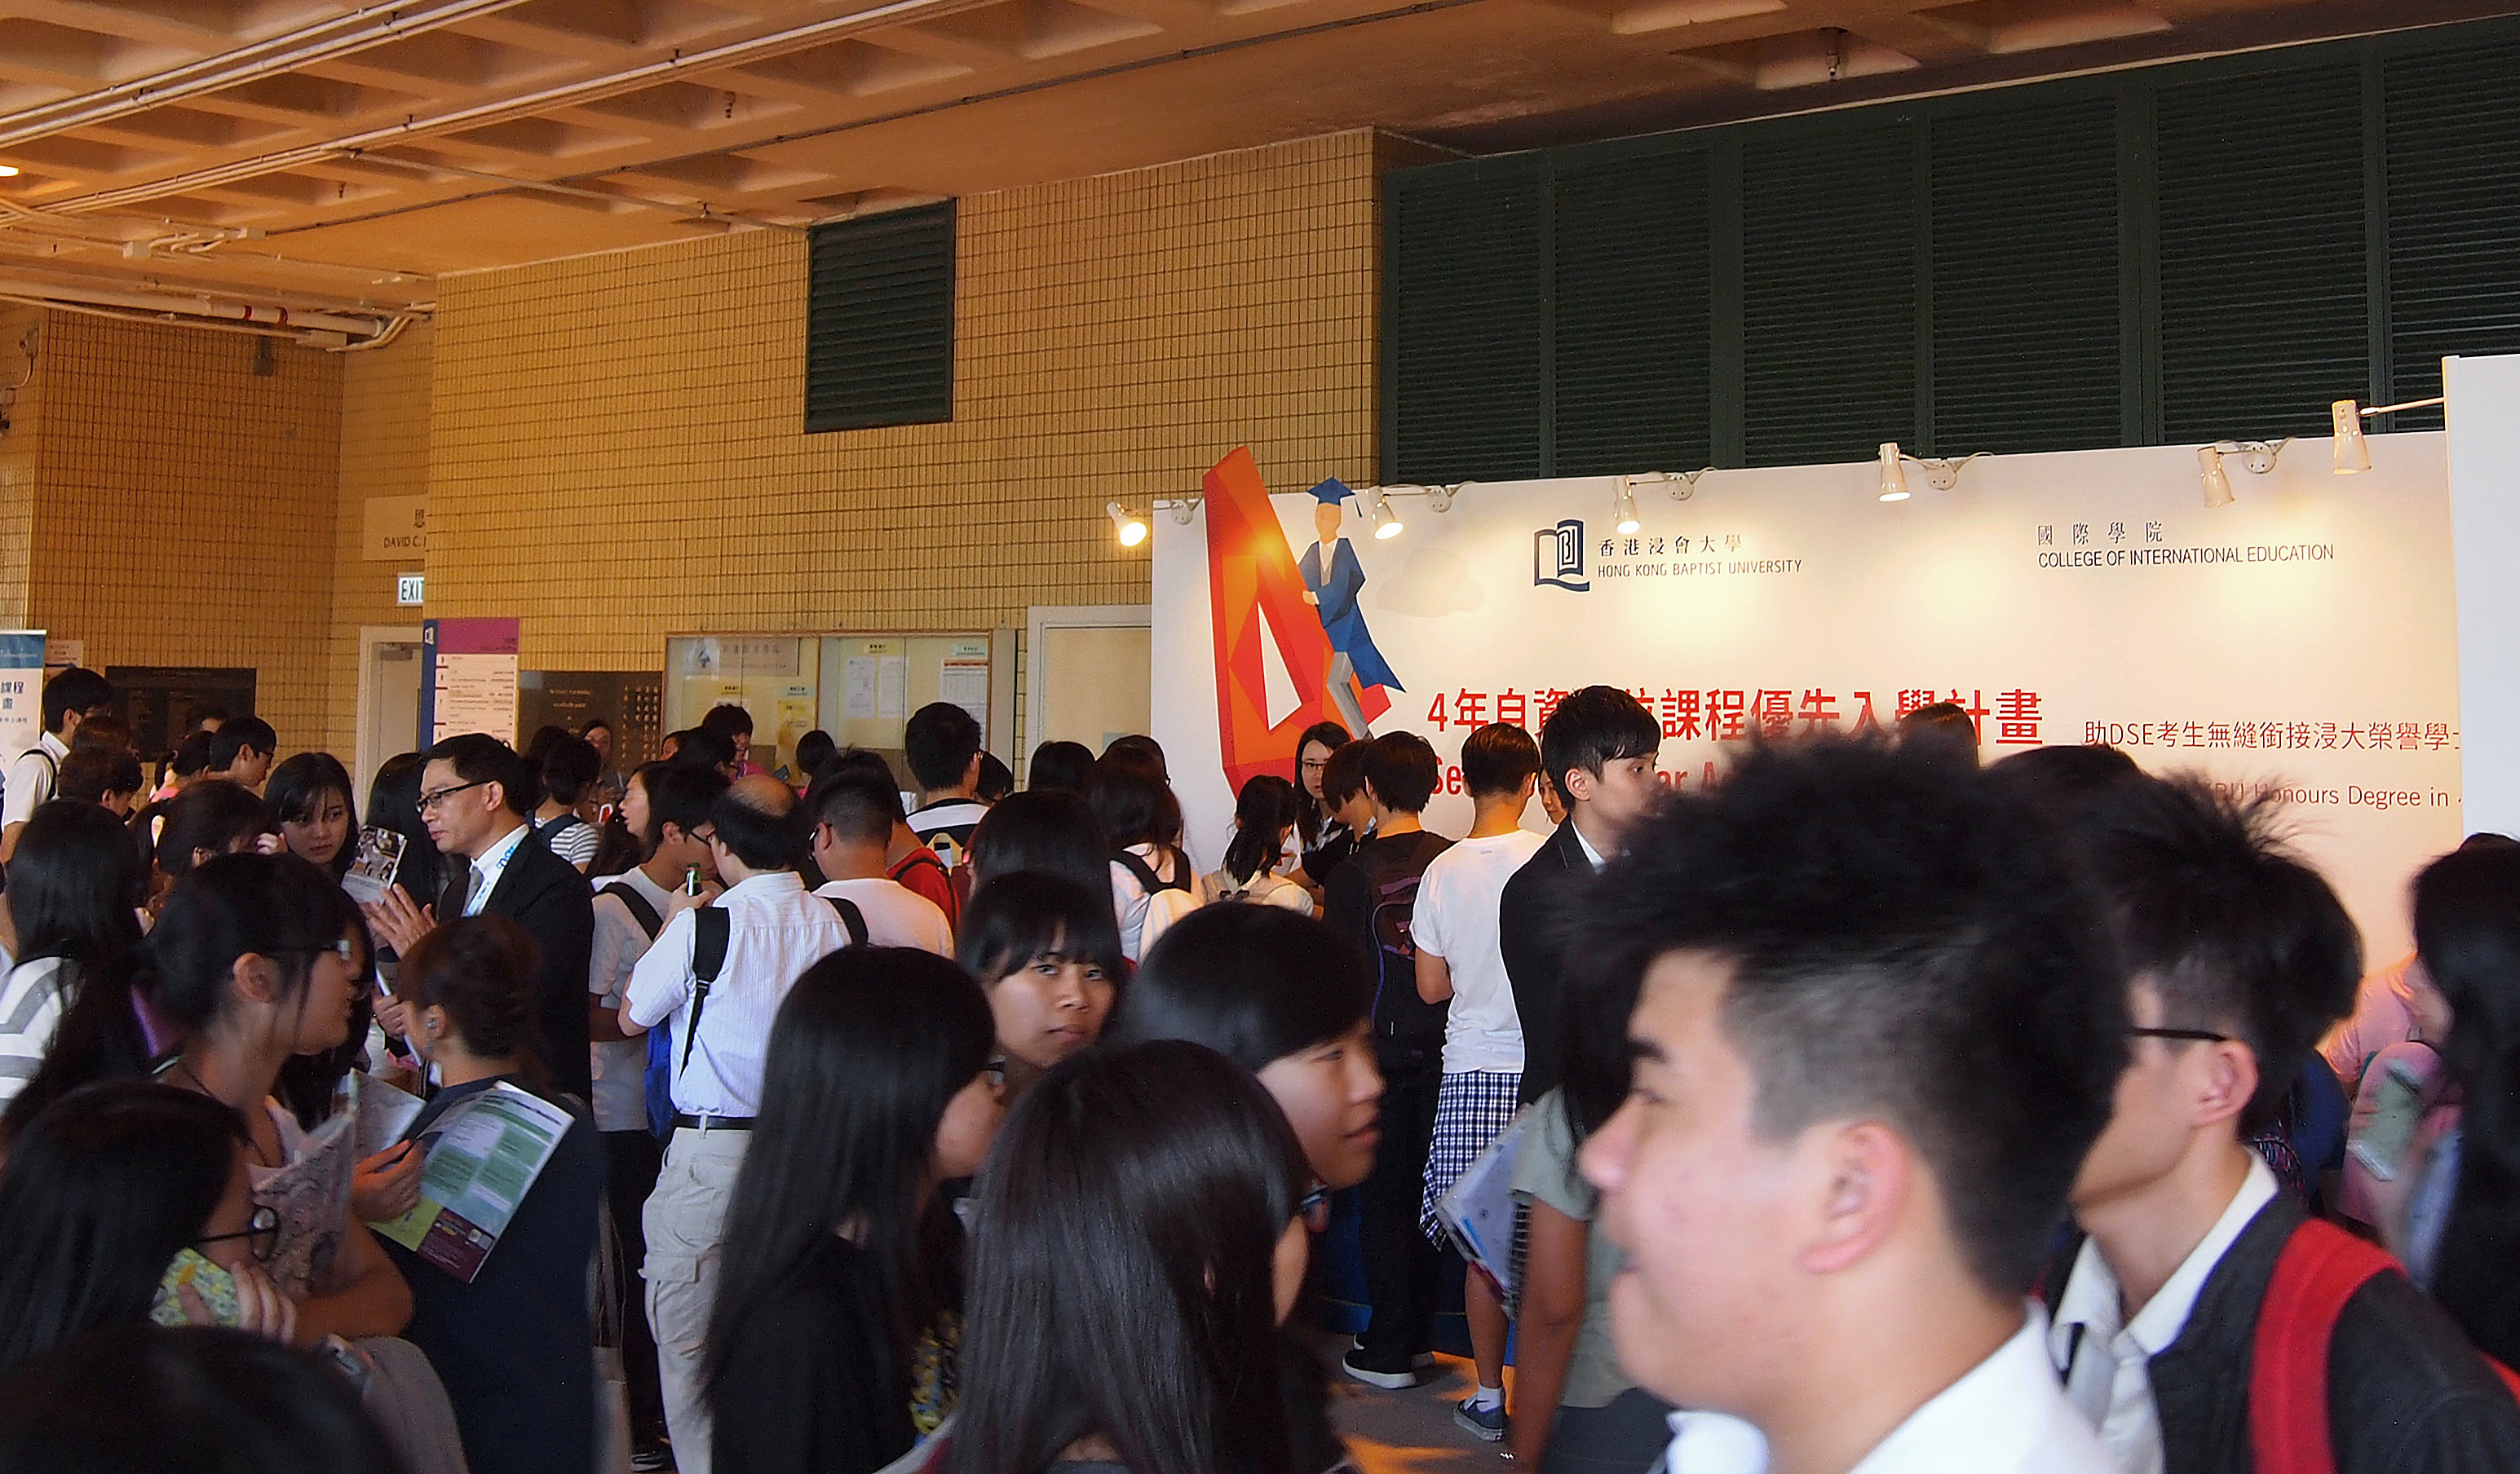 课程展览摊位设于九龙塘校园李作权大道，查询者众，反应热烈。